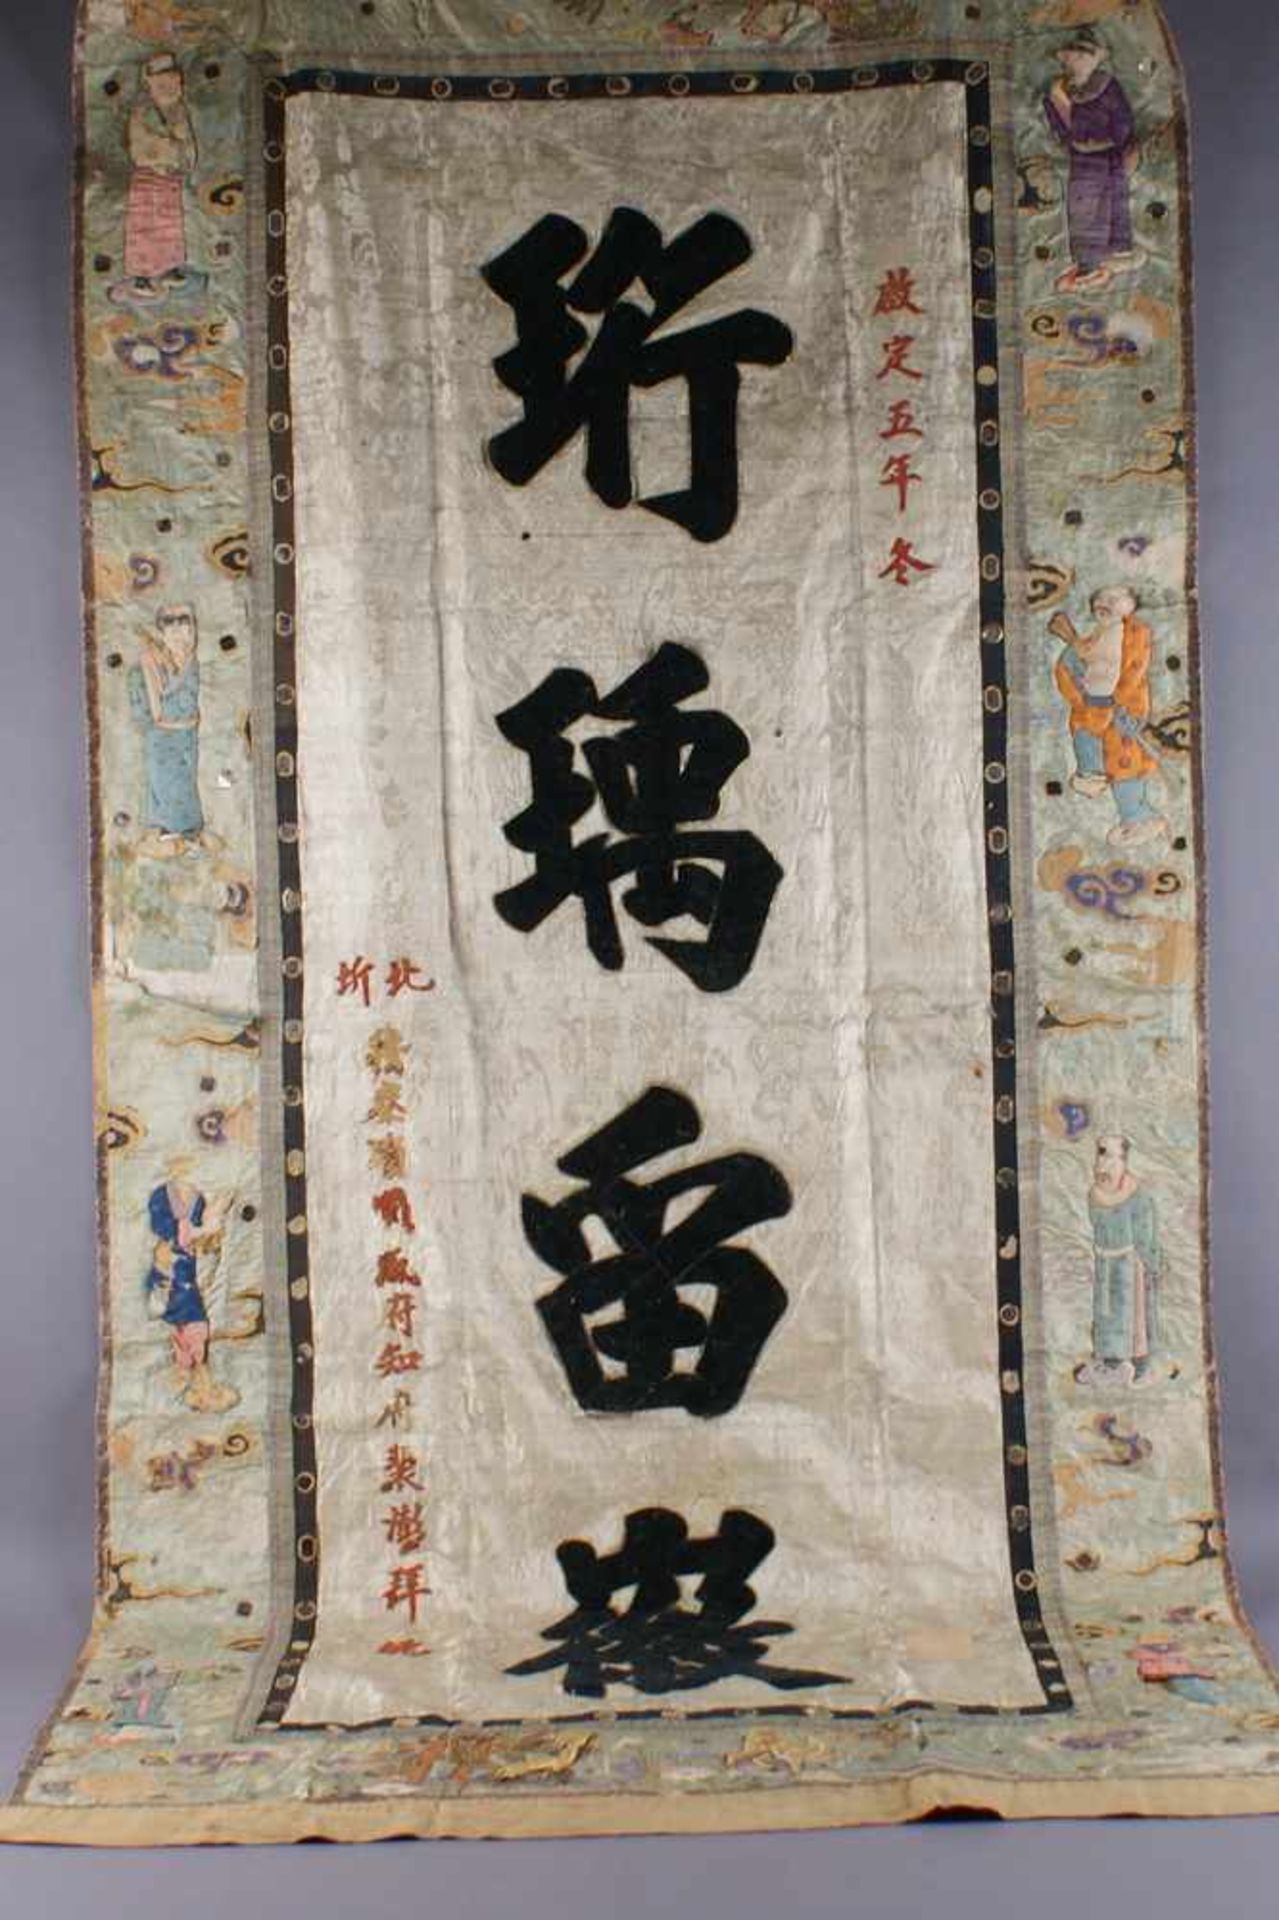 Chinesischer Wandteppich / Tischdecke mit prunkvollen Applikationen aus Stoff, Leder,Papier, - Bild 2 aus 8